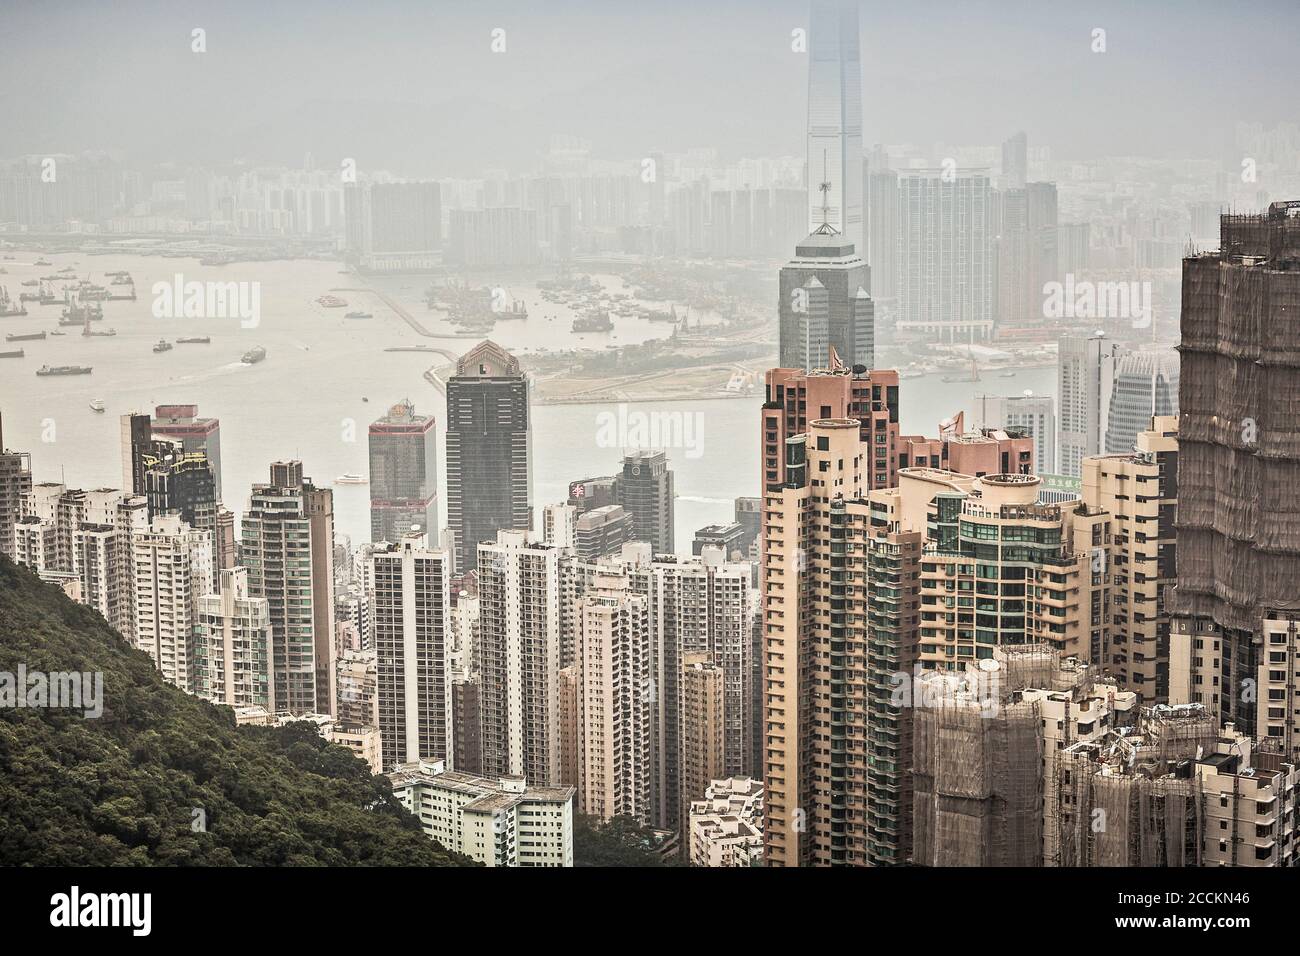 Skyline of Hong Kong from Victoria Peak, Hong Kong, China Stock Photo